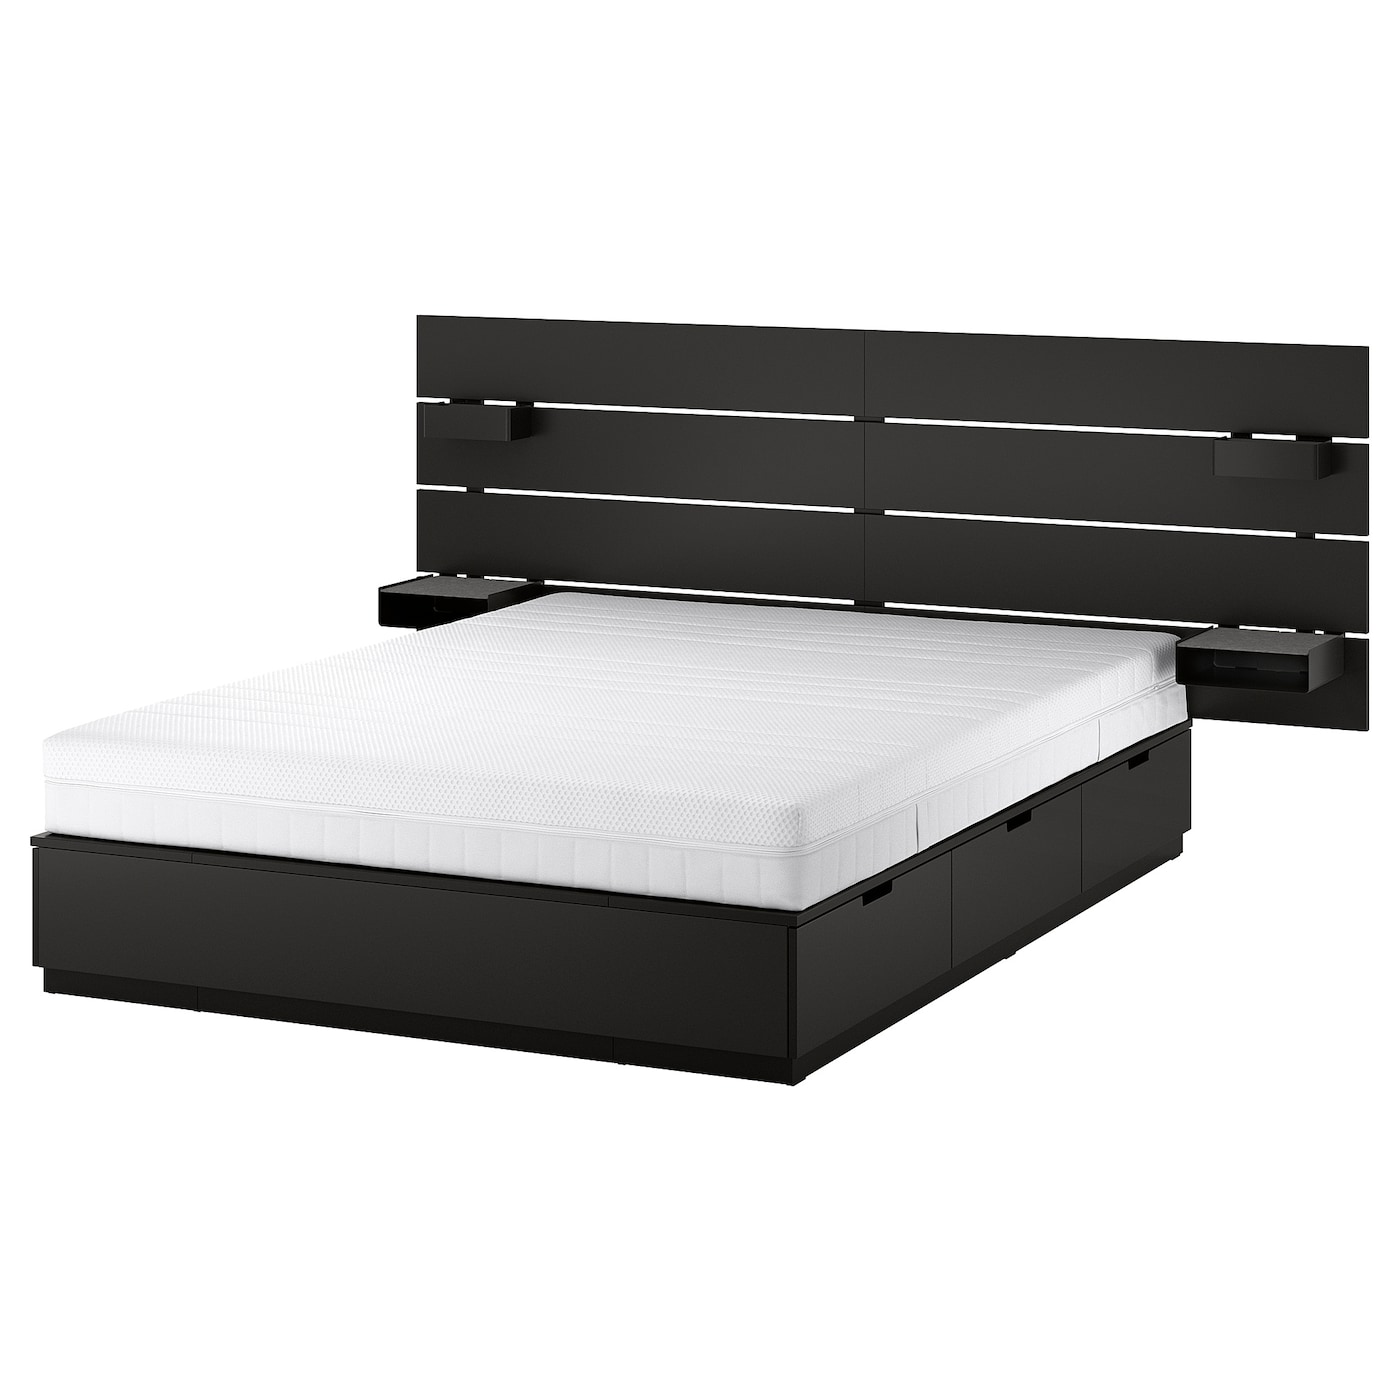 Каркас кровати с контейнером и матрасом - IKEA NORDLI, 200х140 см, матрас средне-жесткий, черный, НОРДЛИ ИКЕА